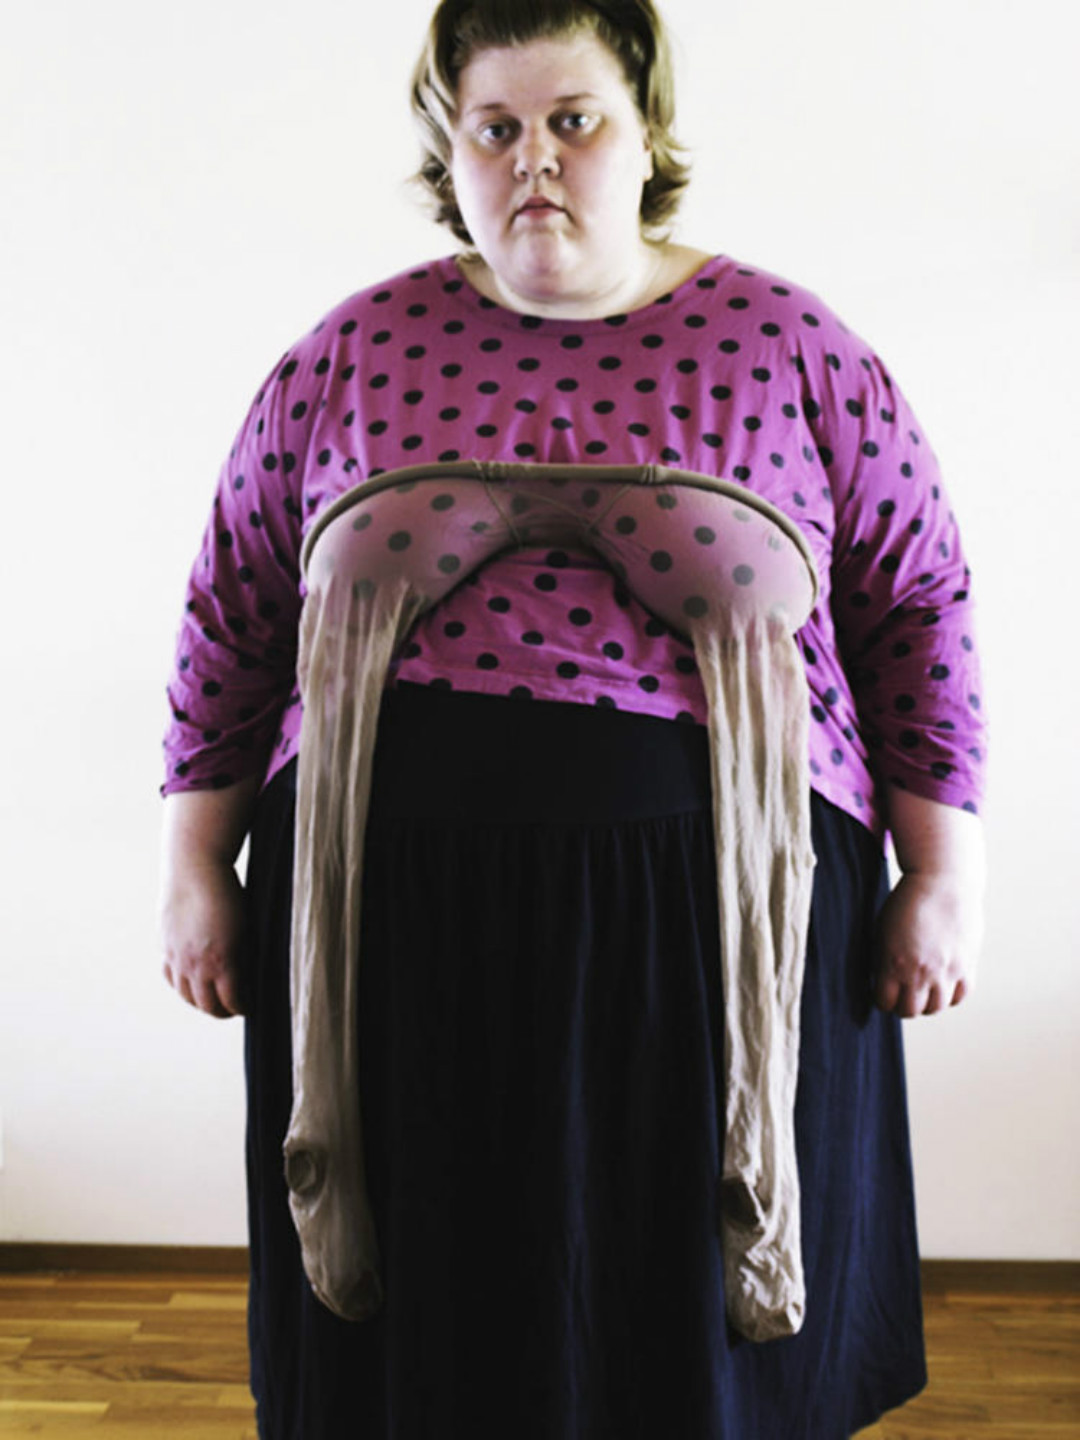 全球最胖女网红,网友最爱看她用胸部穿丝袜,用胸部夹